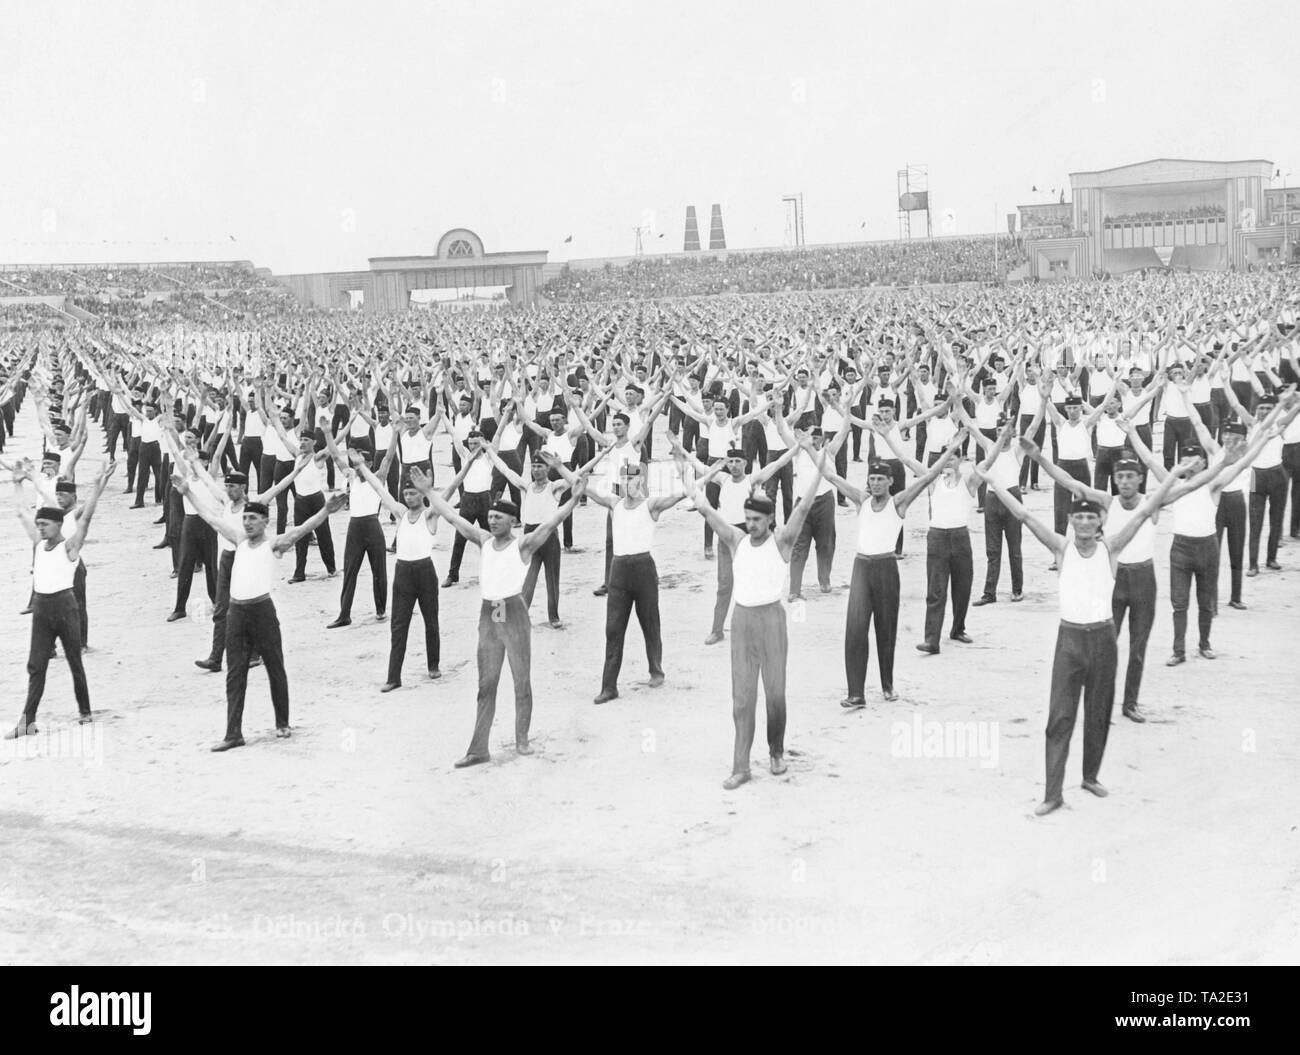 Il Sokol ginnastica movimento ad un Olimpiade a Praga. Gli uomini fare ginnastica in uno stadio. Il Sokol movimento era una nazionale e patriottica organizzazione di ginnastica. Foto Stock